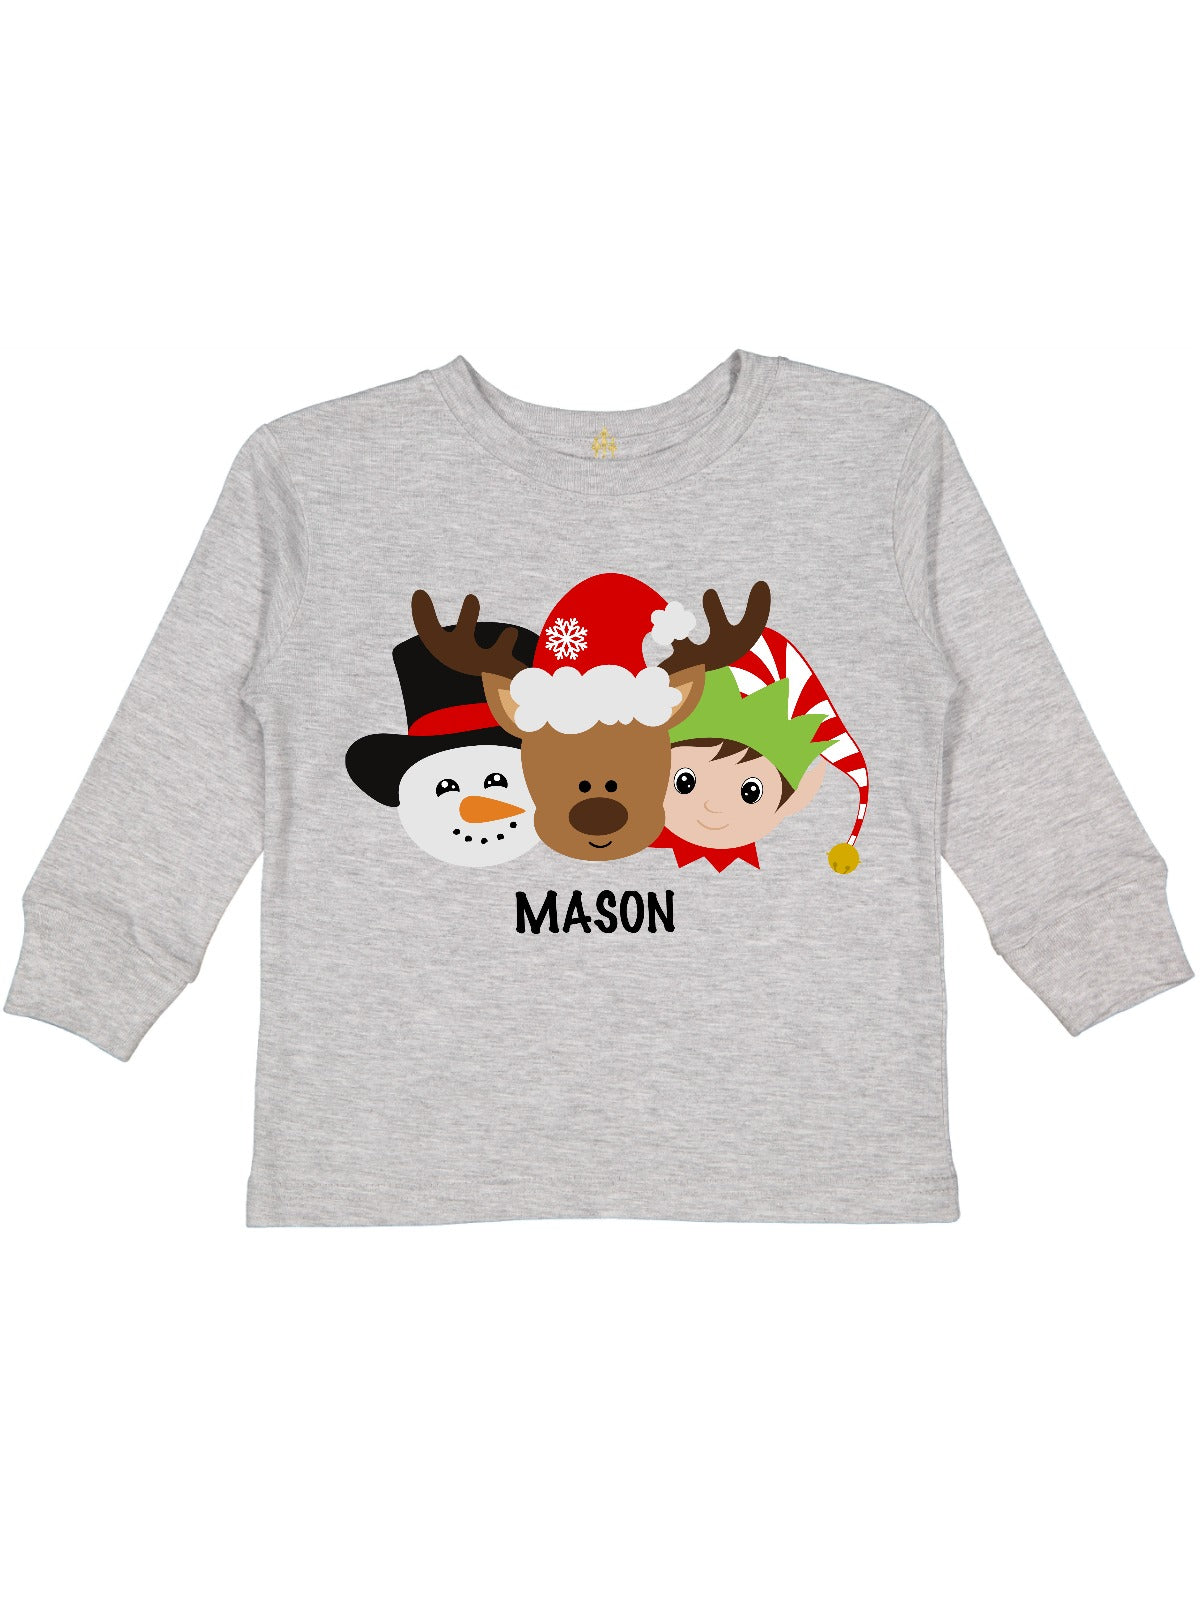 kids christmas t-shirt snowman reindeer elf boy